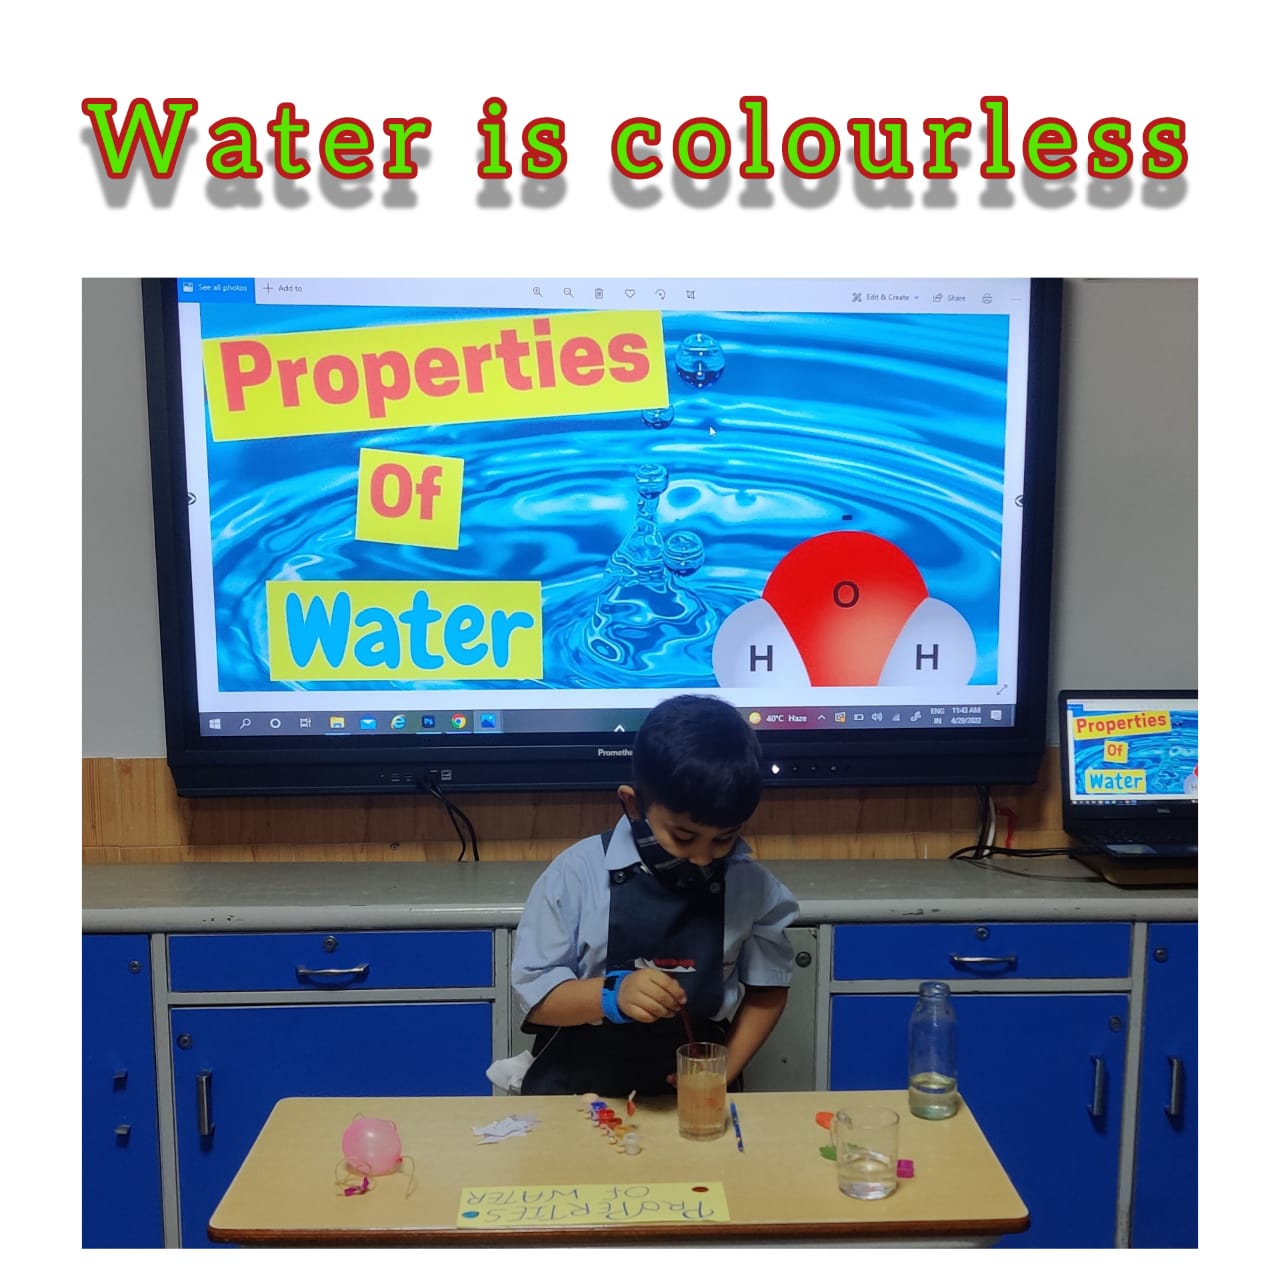 PROPERTIES OF WATER